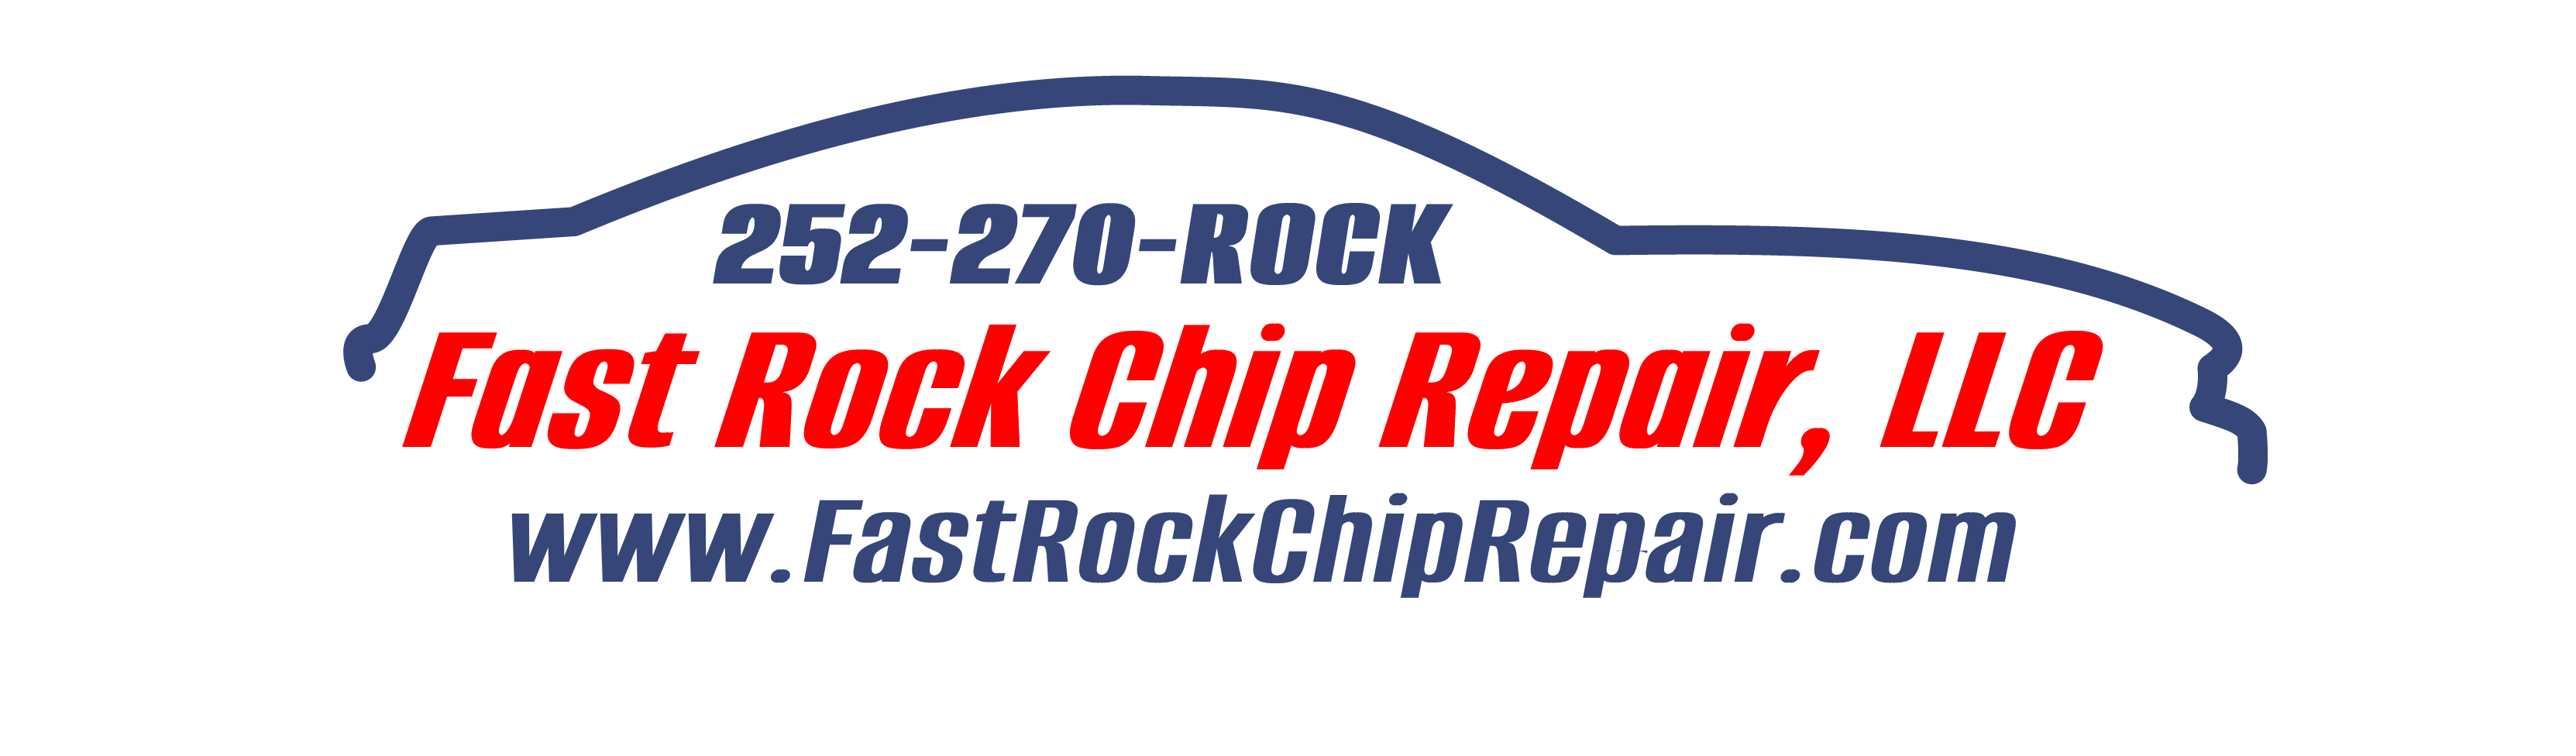 Fast Rock Chip Repair